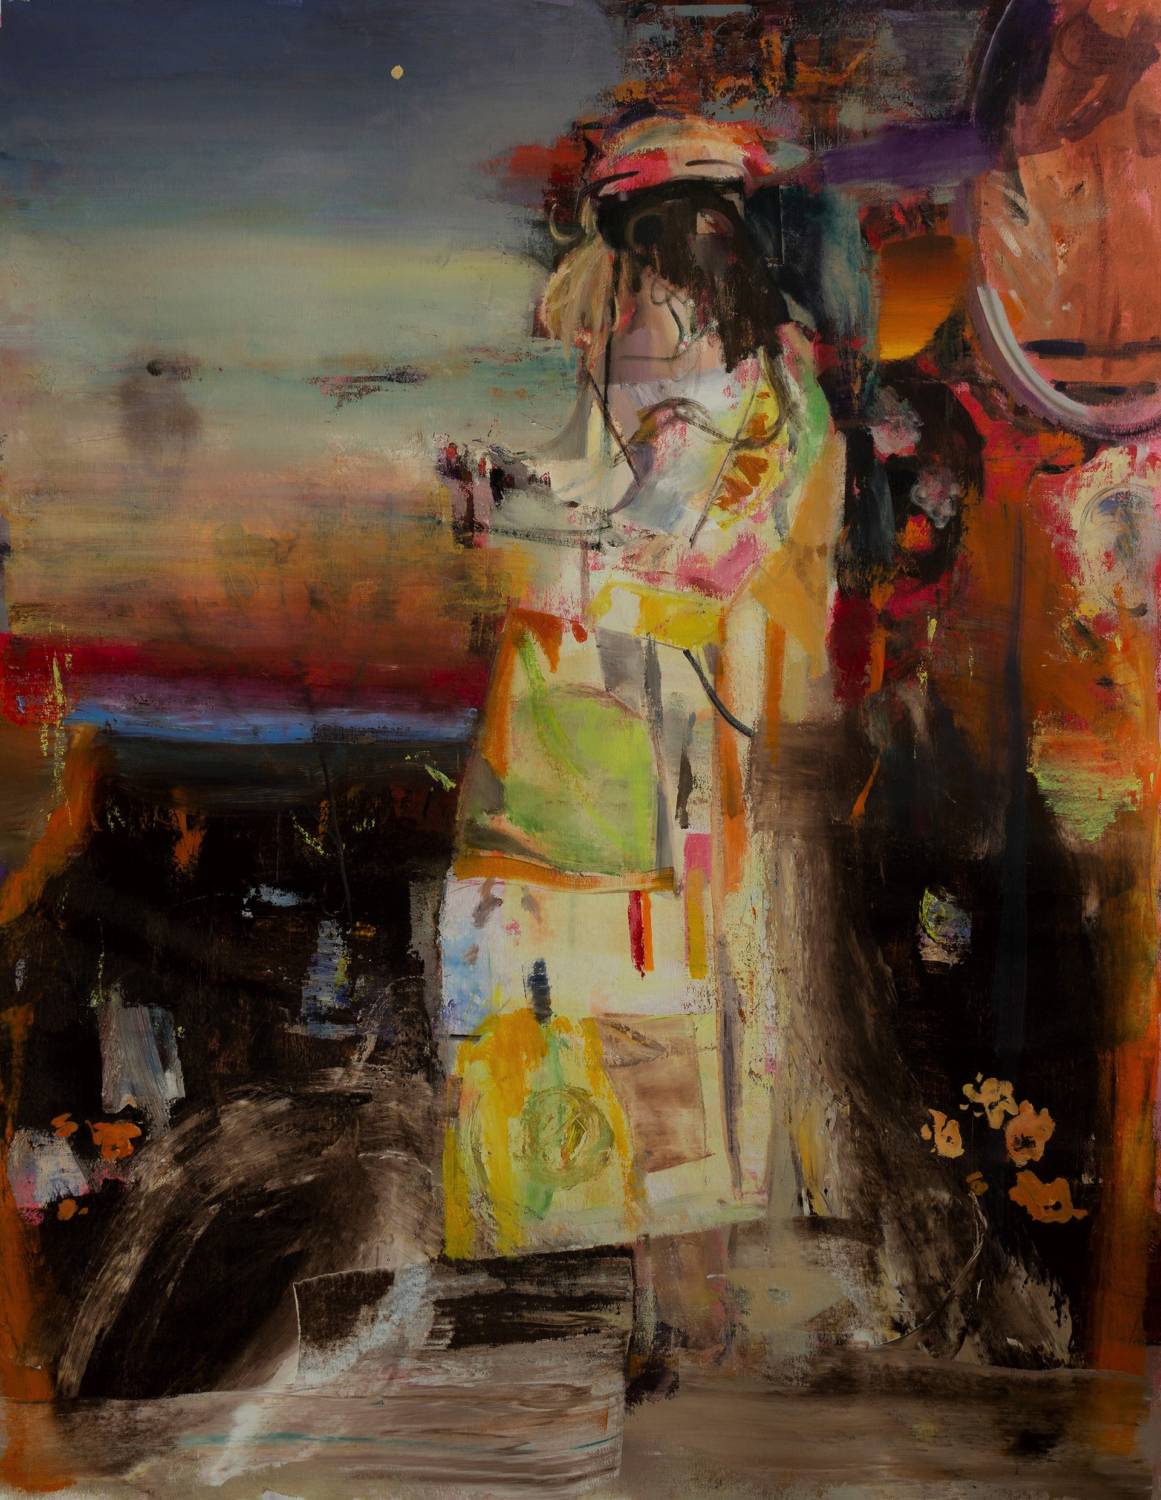 Botond Gagyi, Conquistador, Oil On Canvas, 2020, 155 X 125 Cm